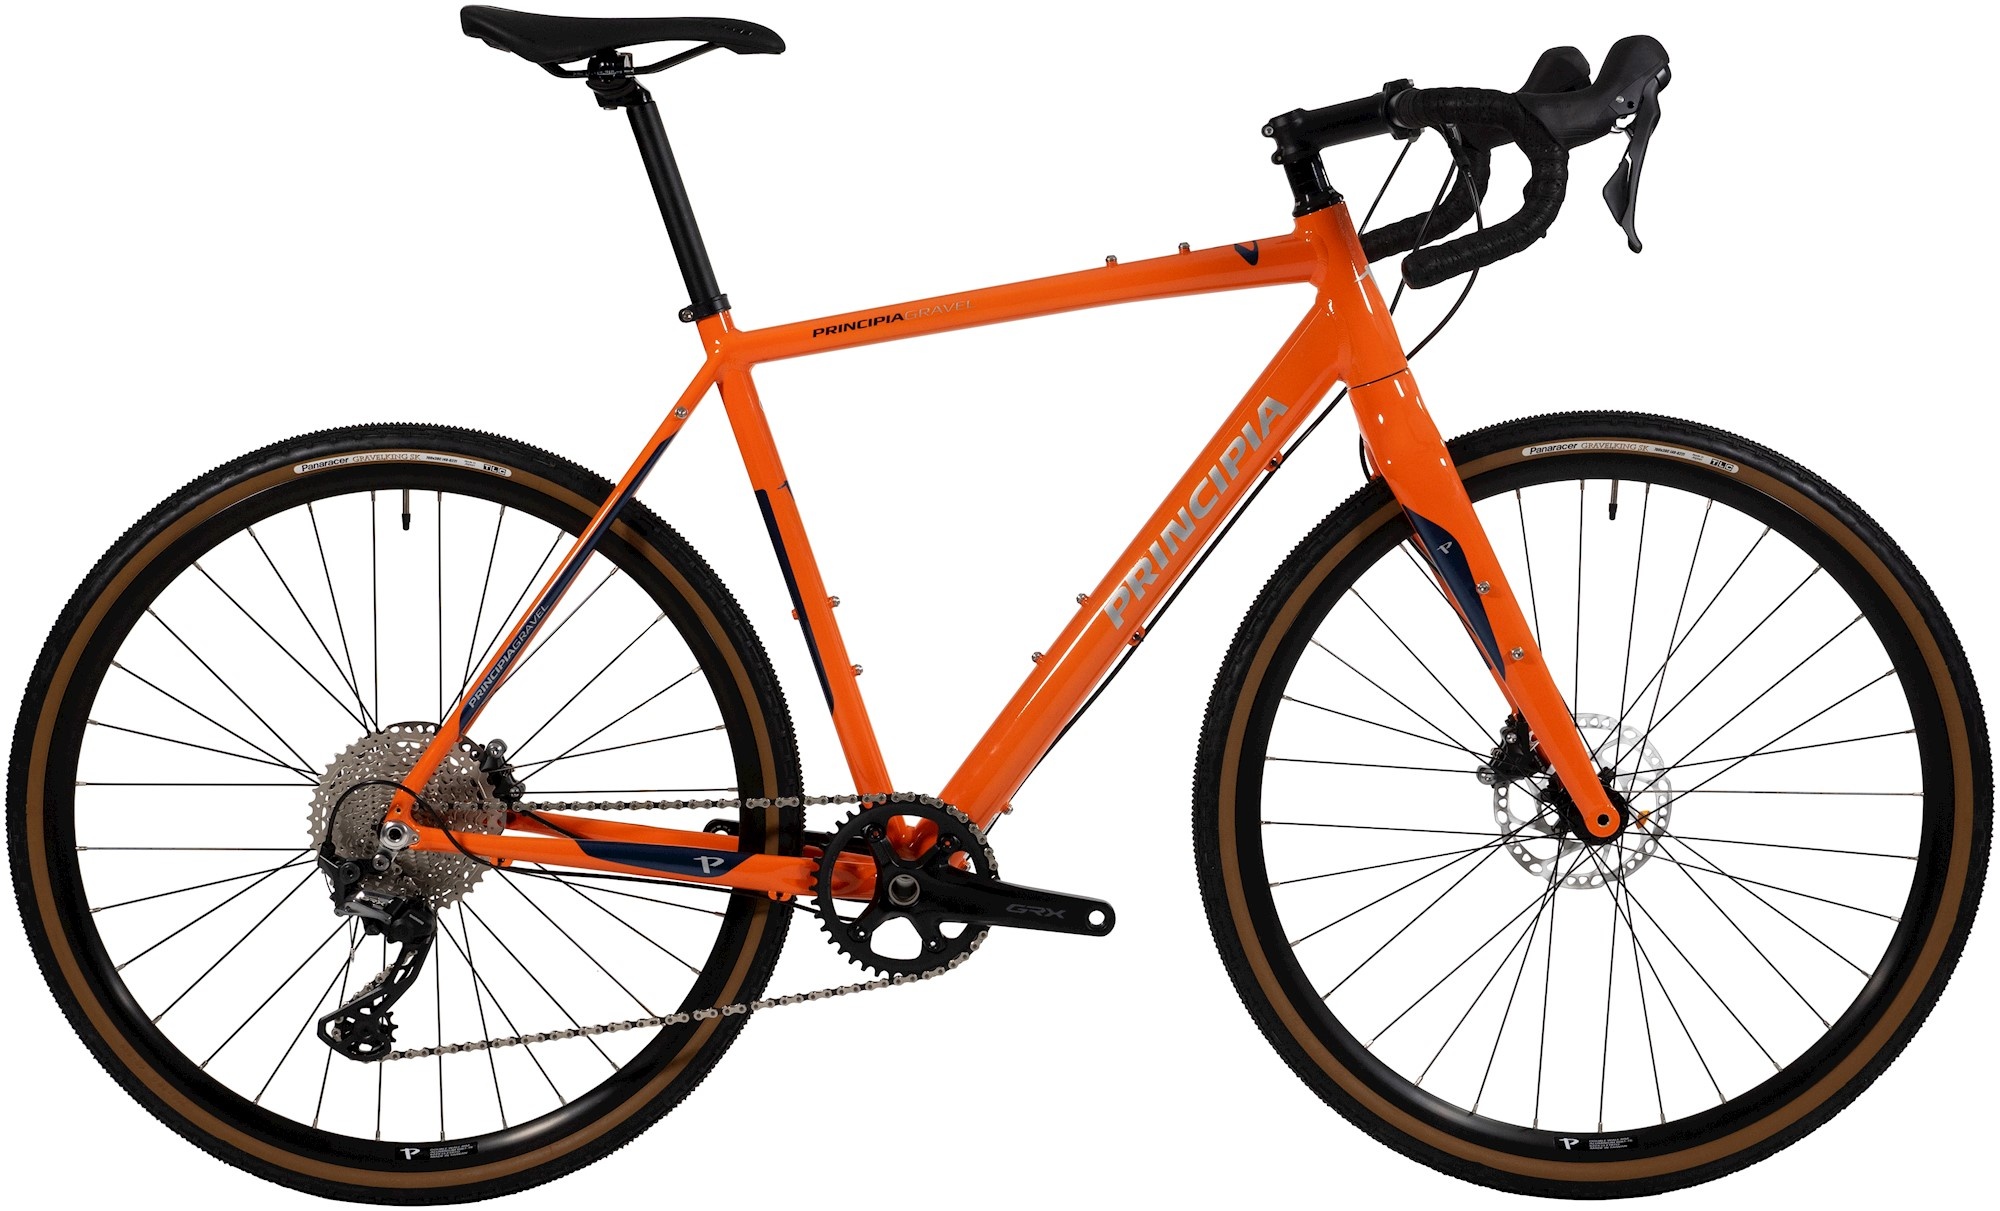 Cykler - Racercykler - Principia Gravel Alu GRX RX600 2021 - Orange